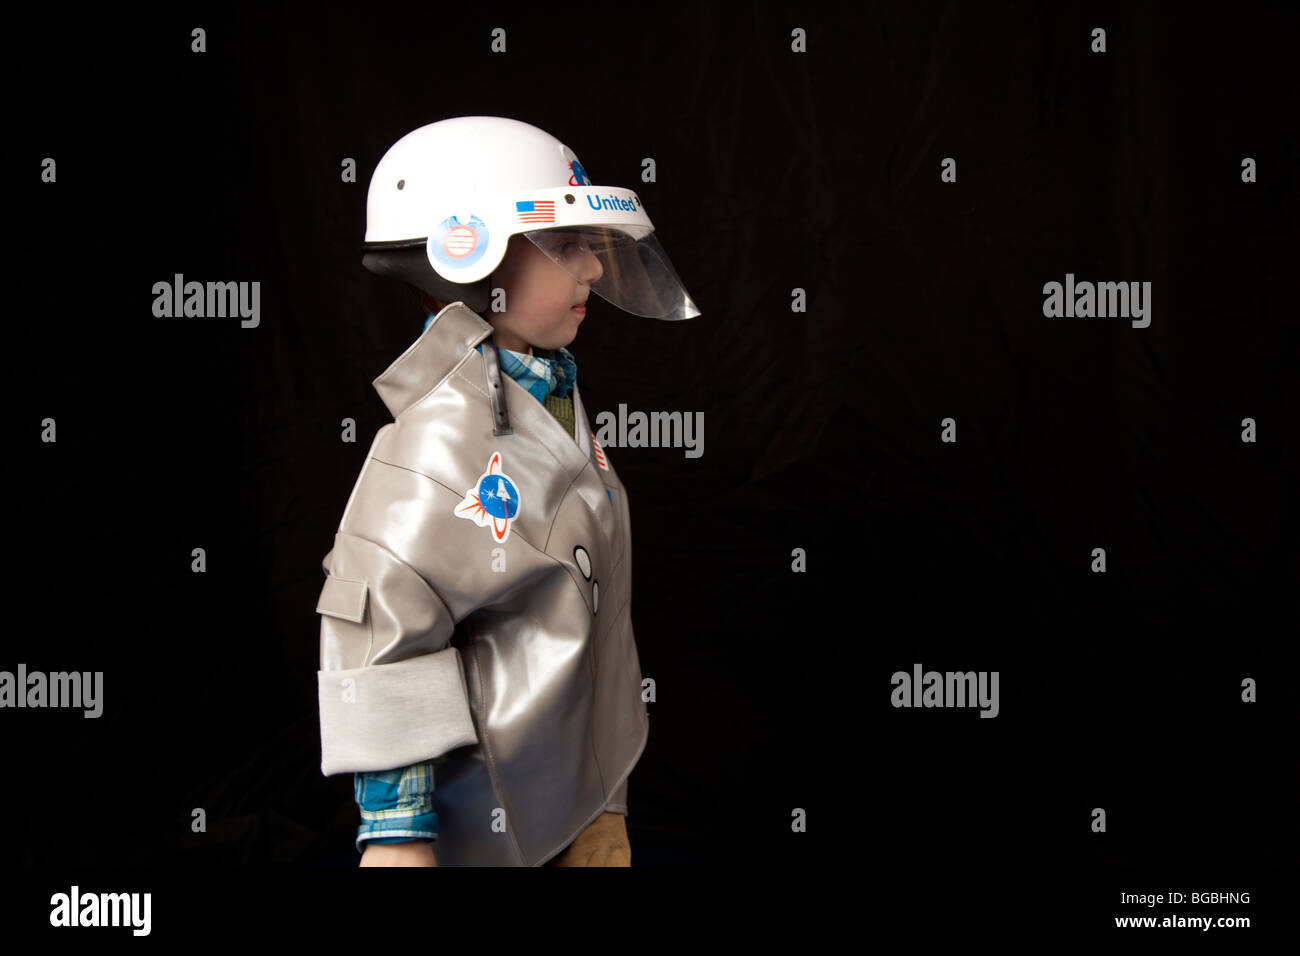 ein Junge im Profil in einem Raumanzug Kostüm mit Helm auf schwarzem Hintergrund Stockfoto